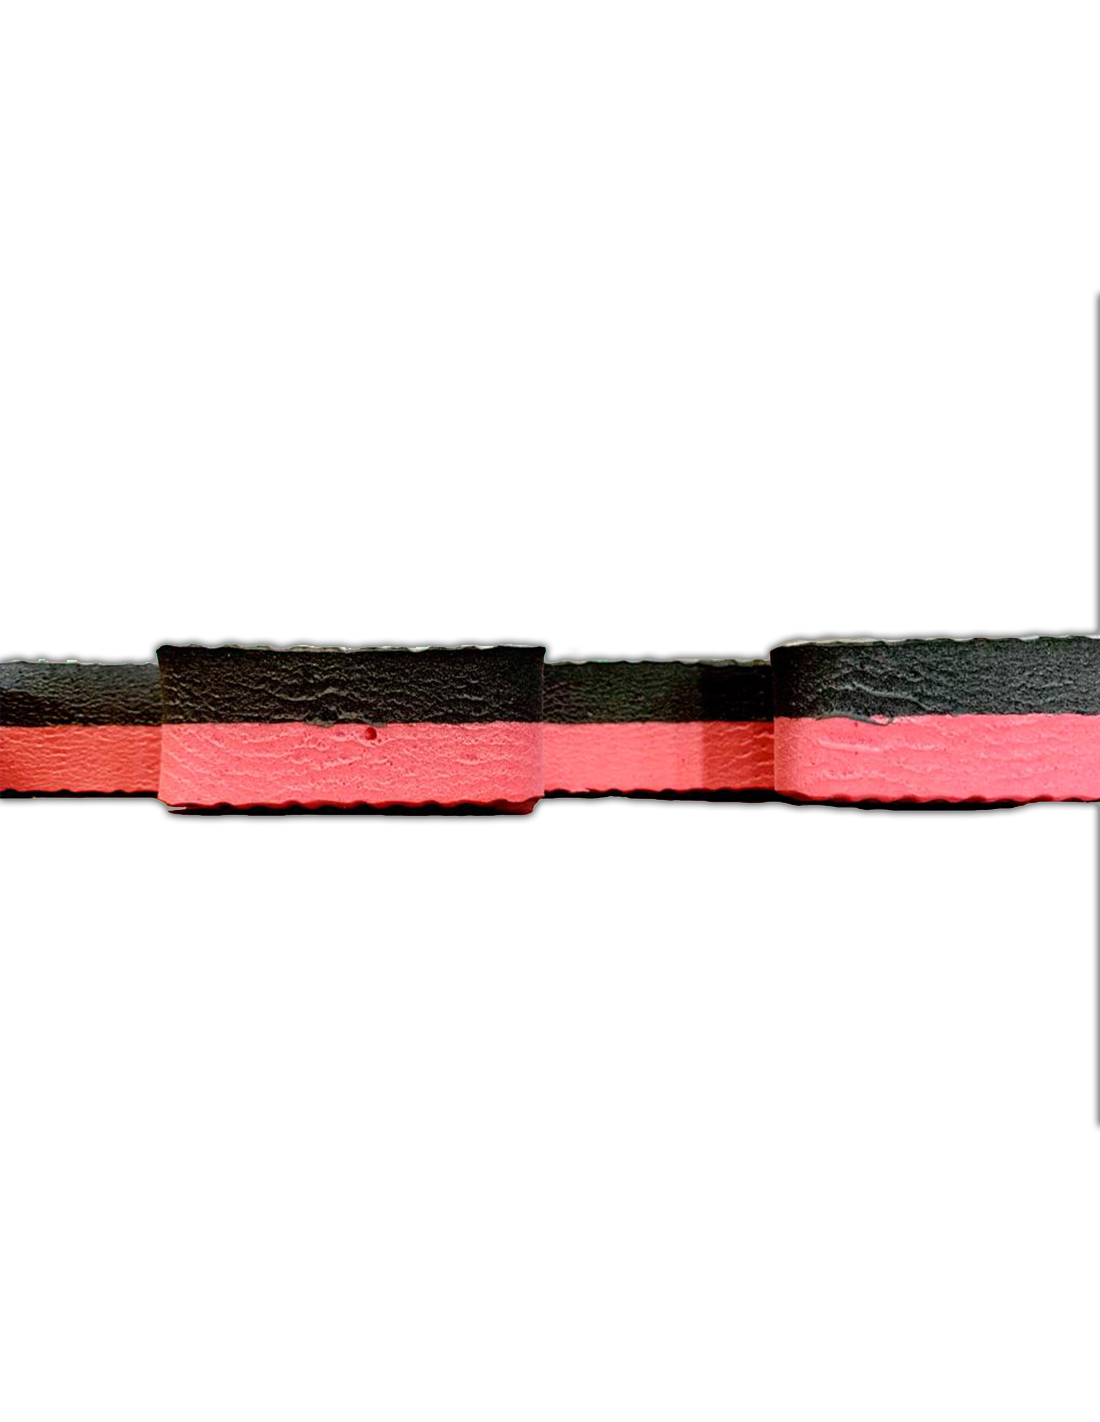 Lote x10 losetas Tatami Puzzle - Rojo/Negro Esterilla Reversible  Antideslizante Suelo para gimnasios, Artes Marciales, Judo - Espesor: 20mm